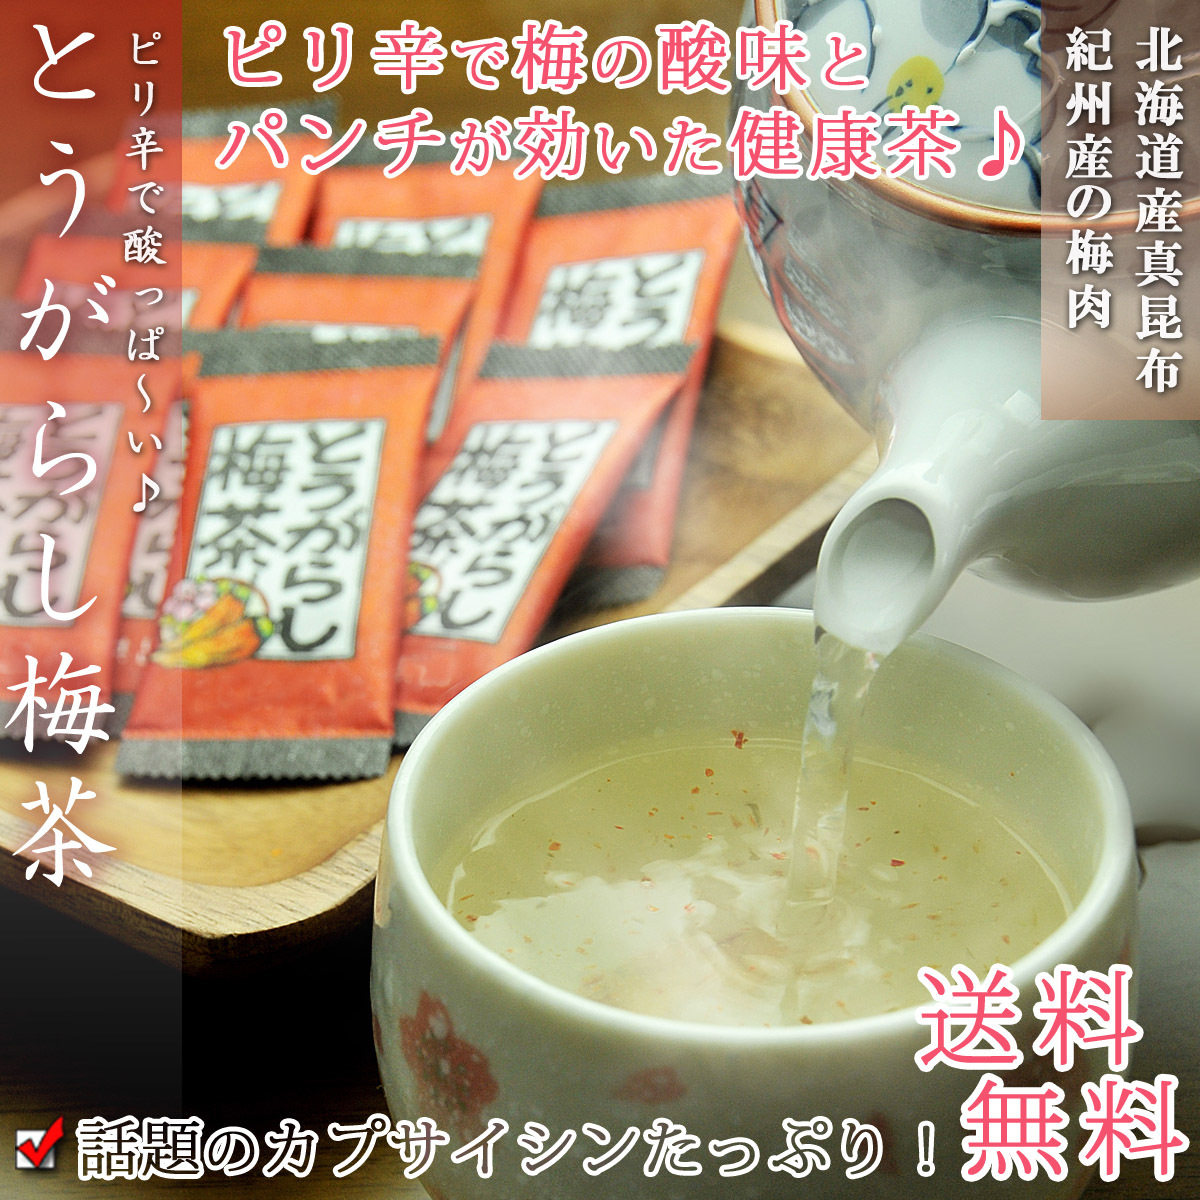 梅昆布茶 とうがらし梅茶 72P(24p×3袋)昆布茶 健康茶 こぶちゃ コンブチャ こんぶ茶 お茶 ギフト 得トク2WEEKS